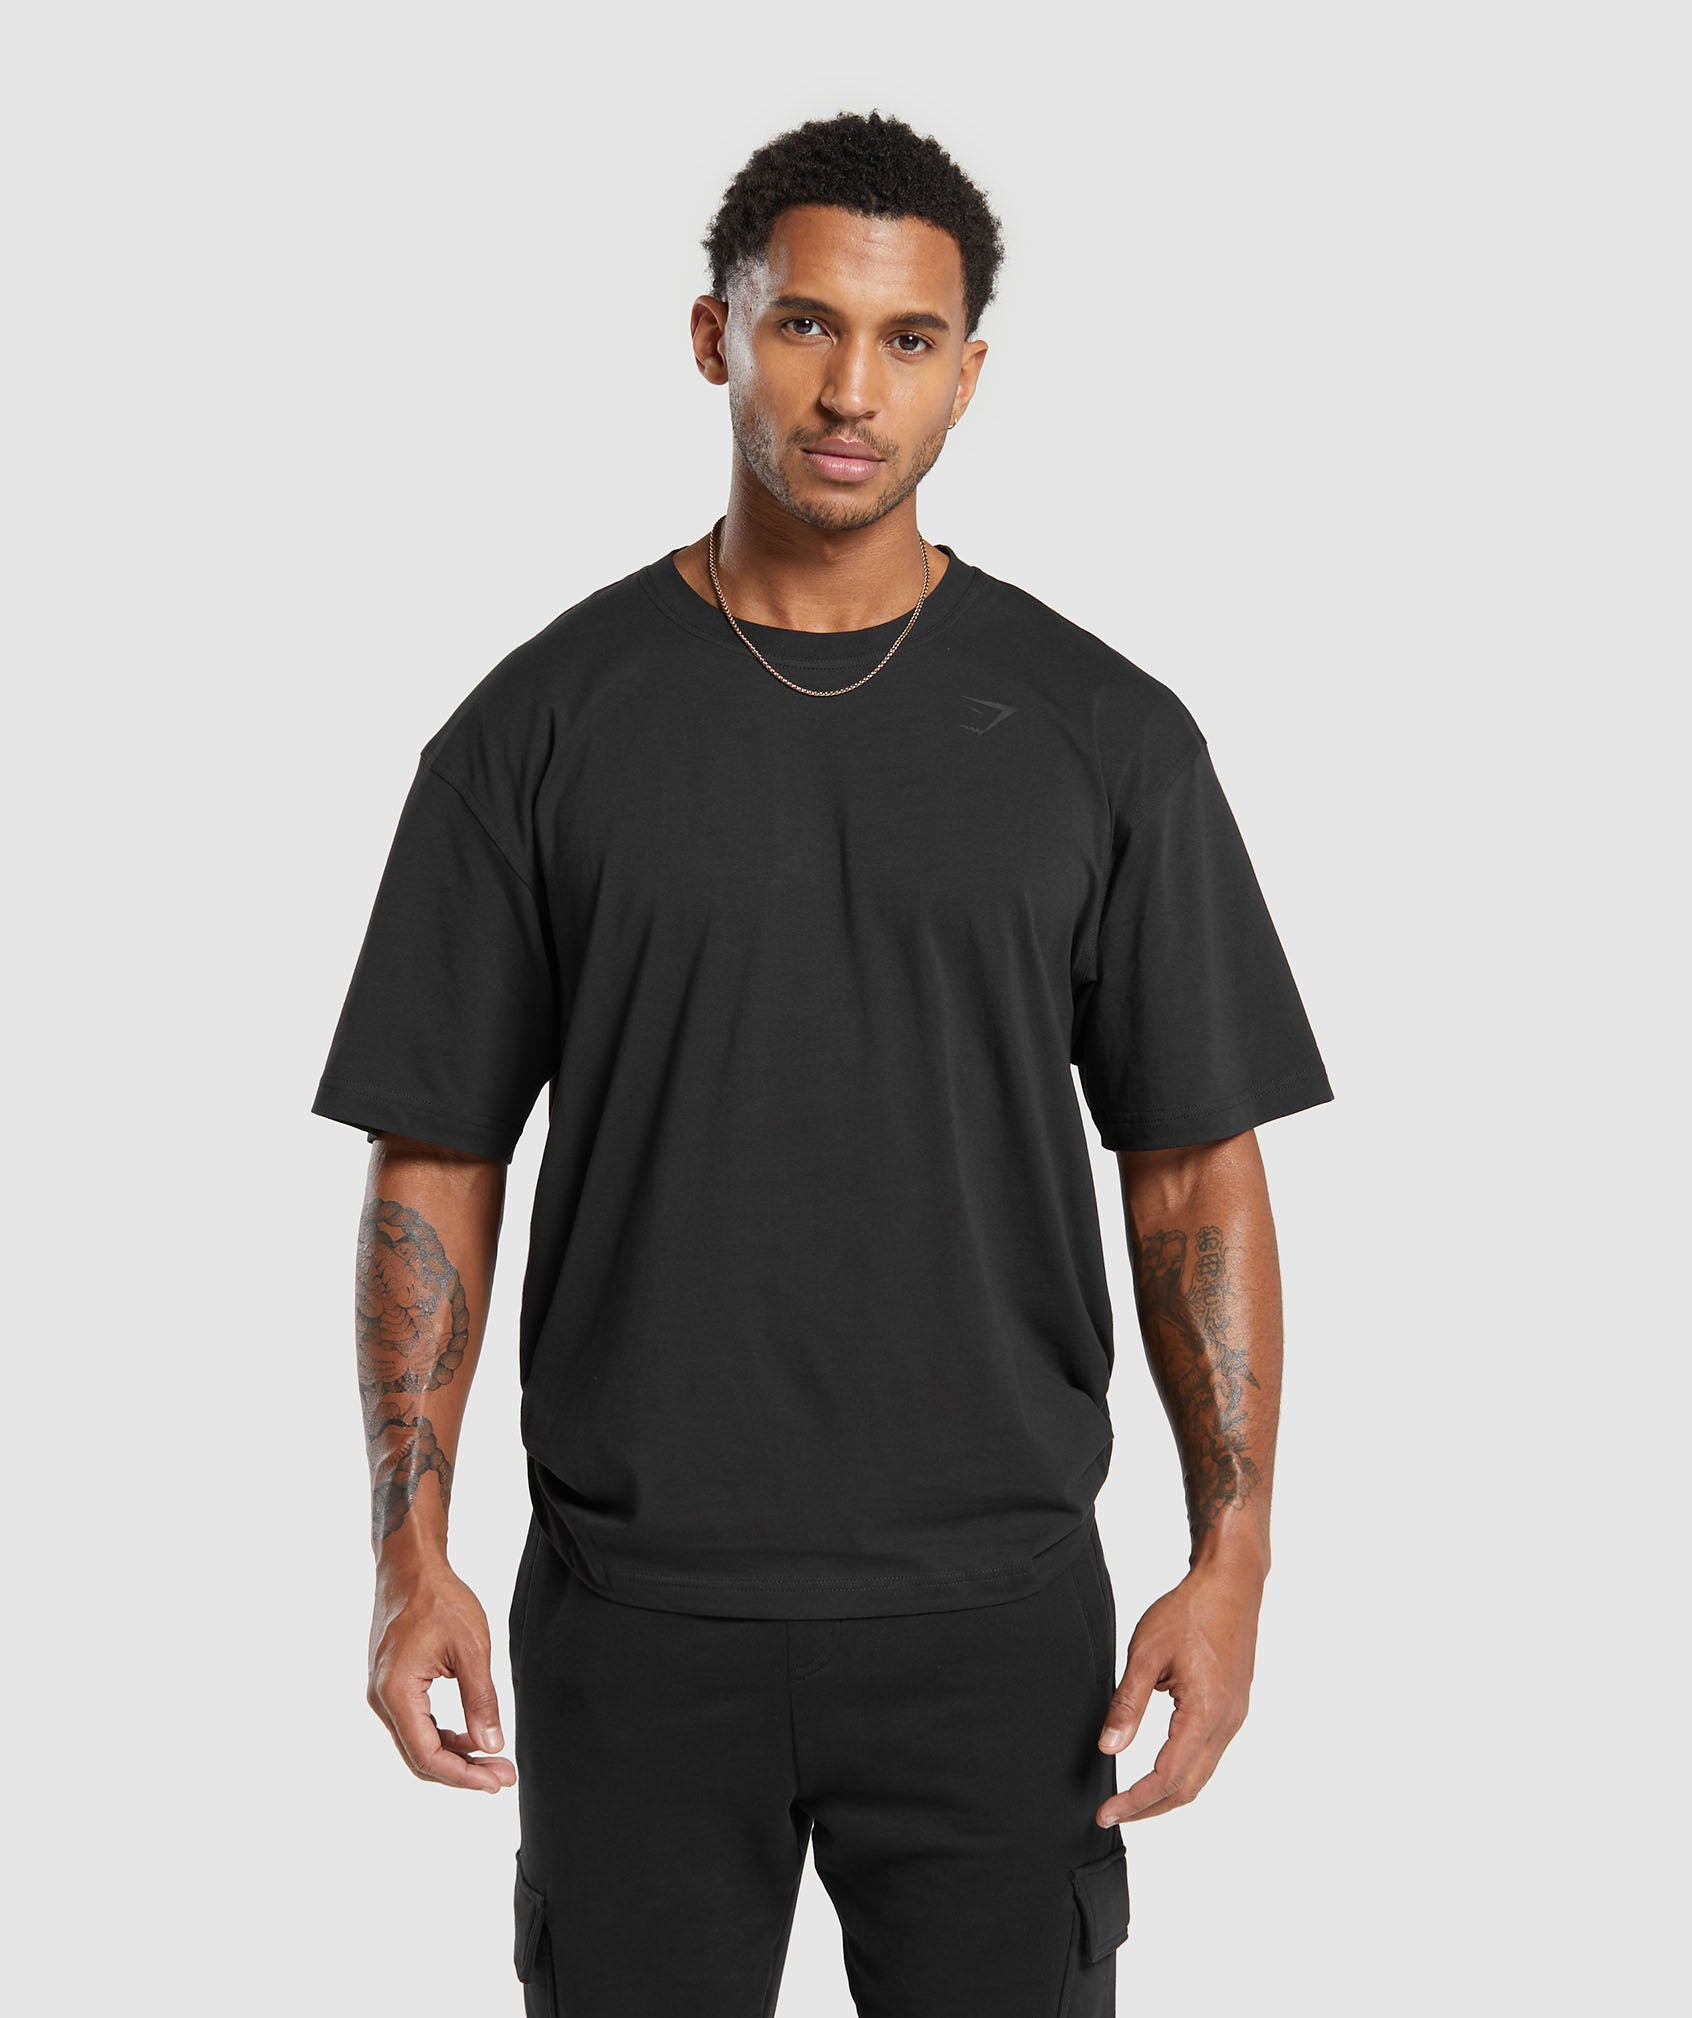 Gymshark Power T-Shirt - Black | Gymshark